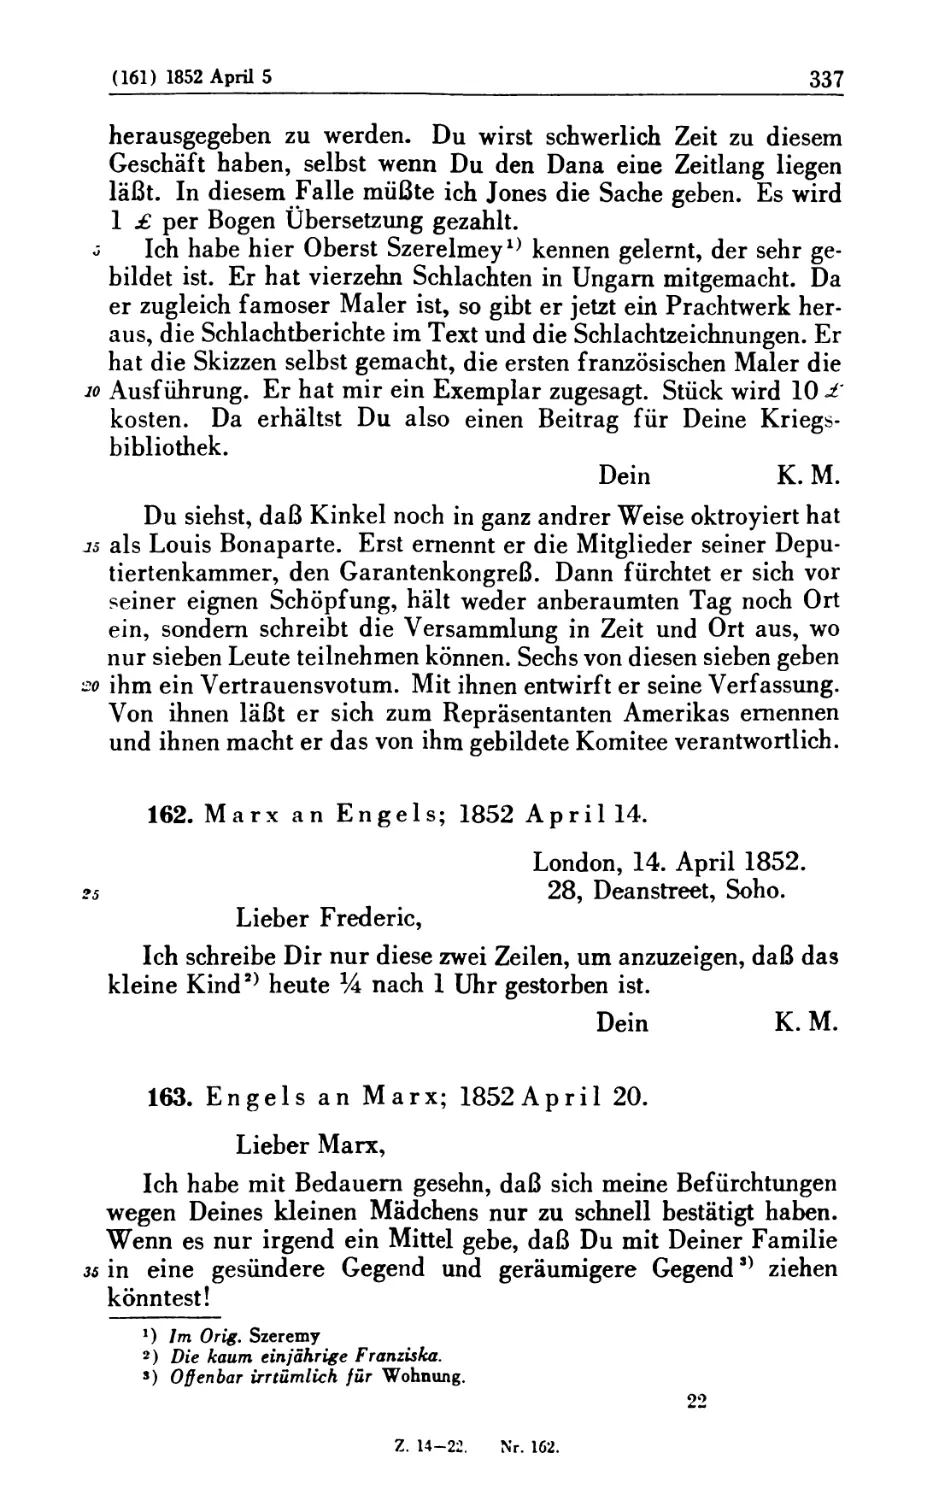 162. Marx an Engels; 1852 April 14
163. Engels an Marx; 1852 April 20